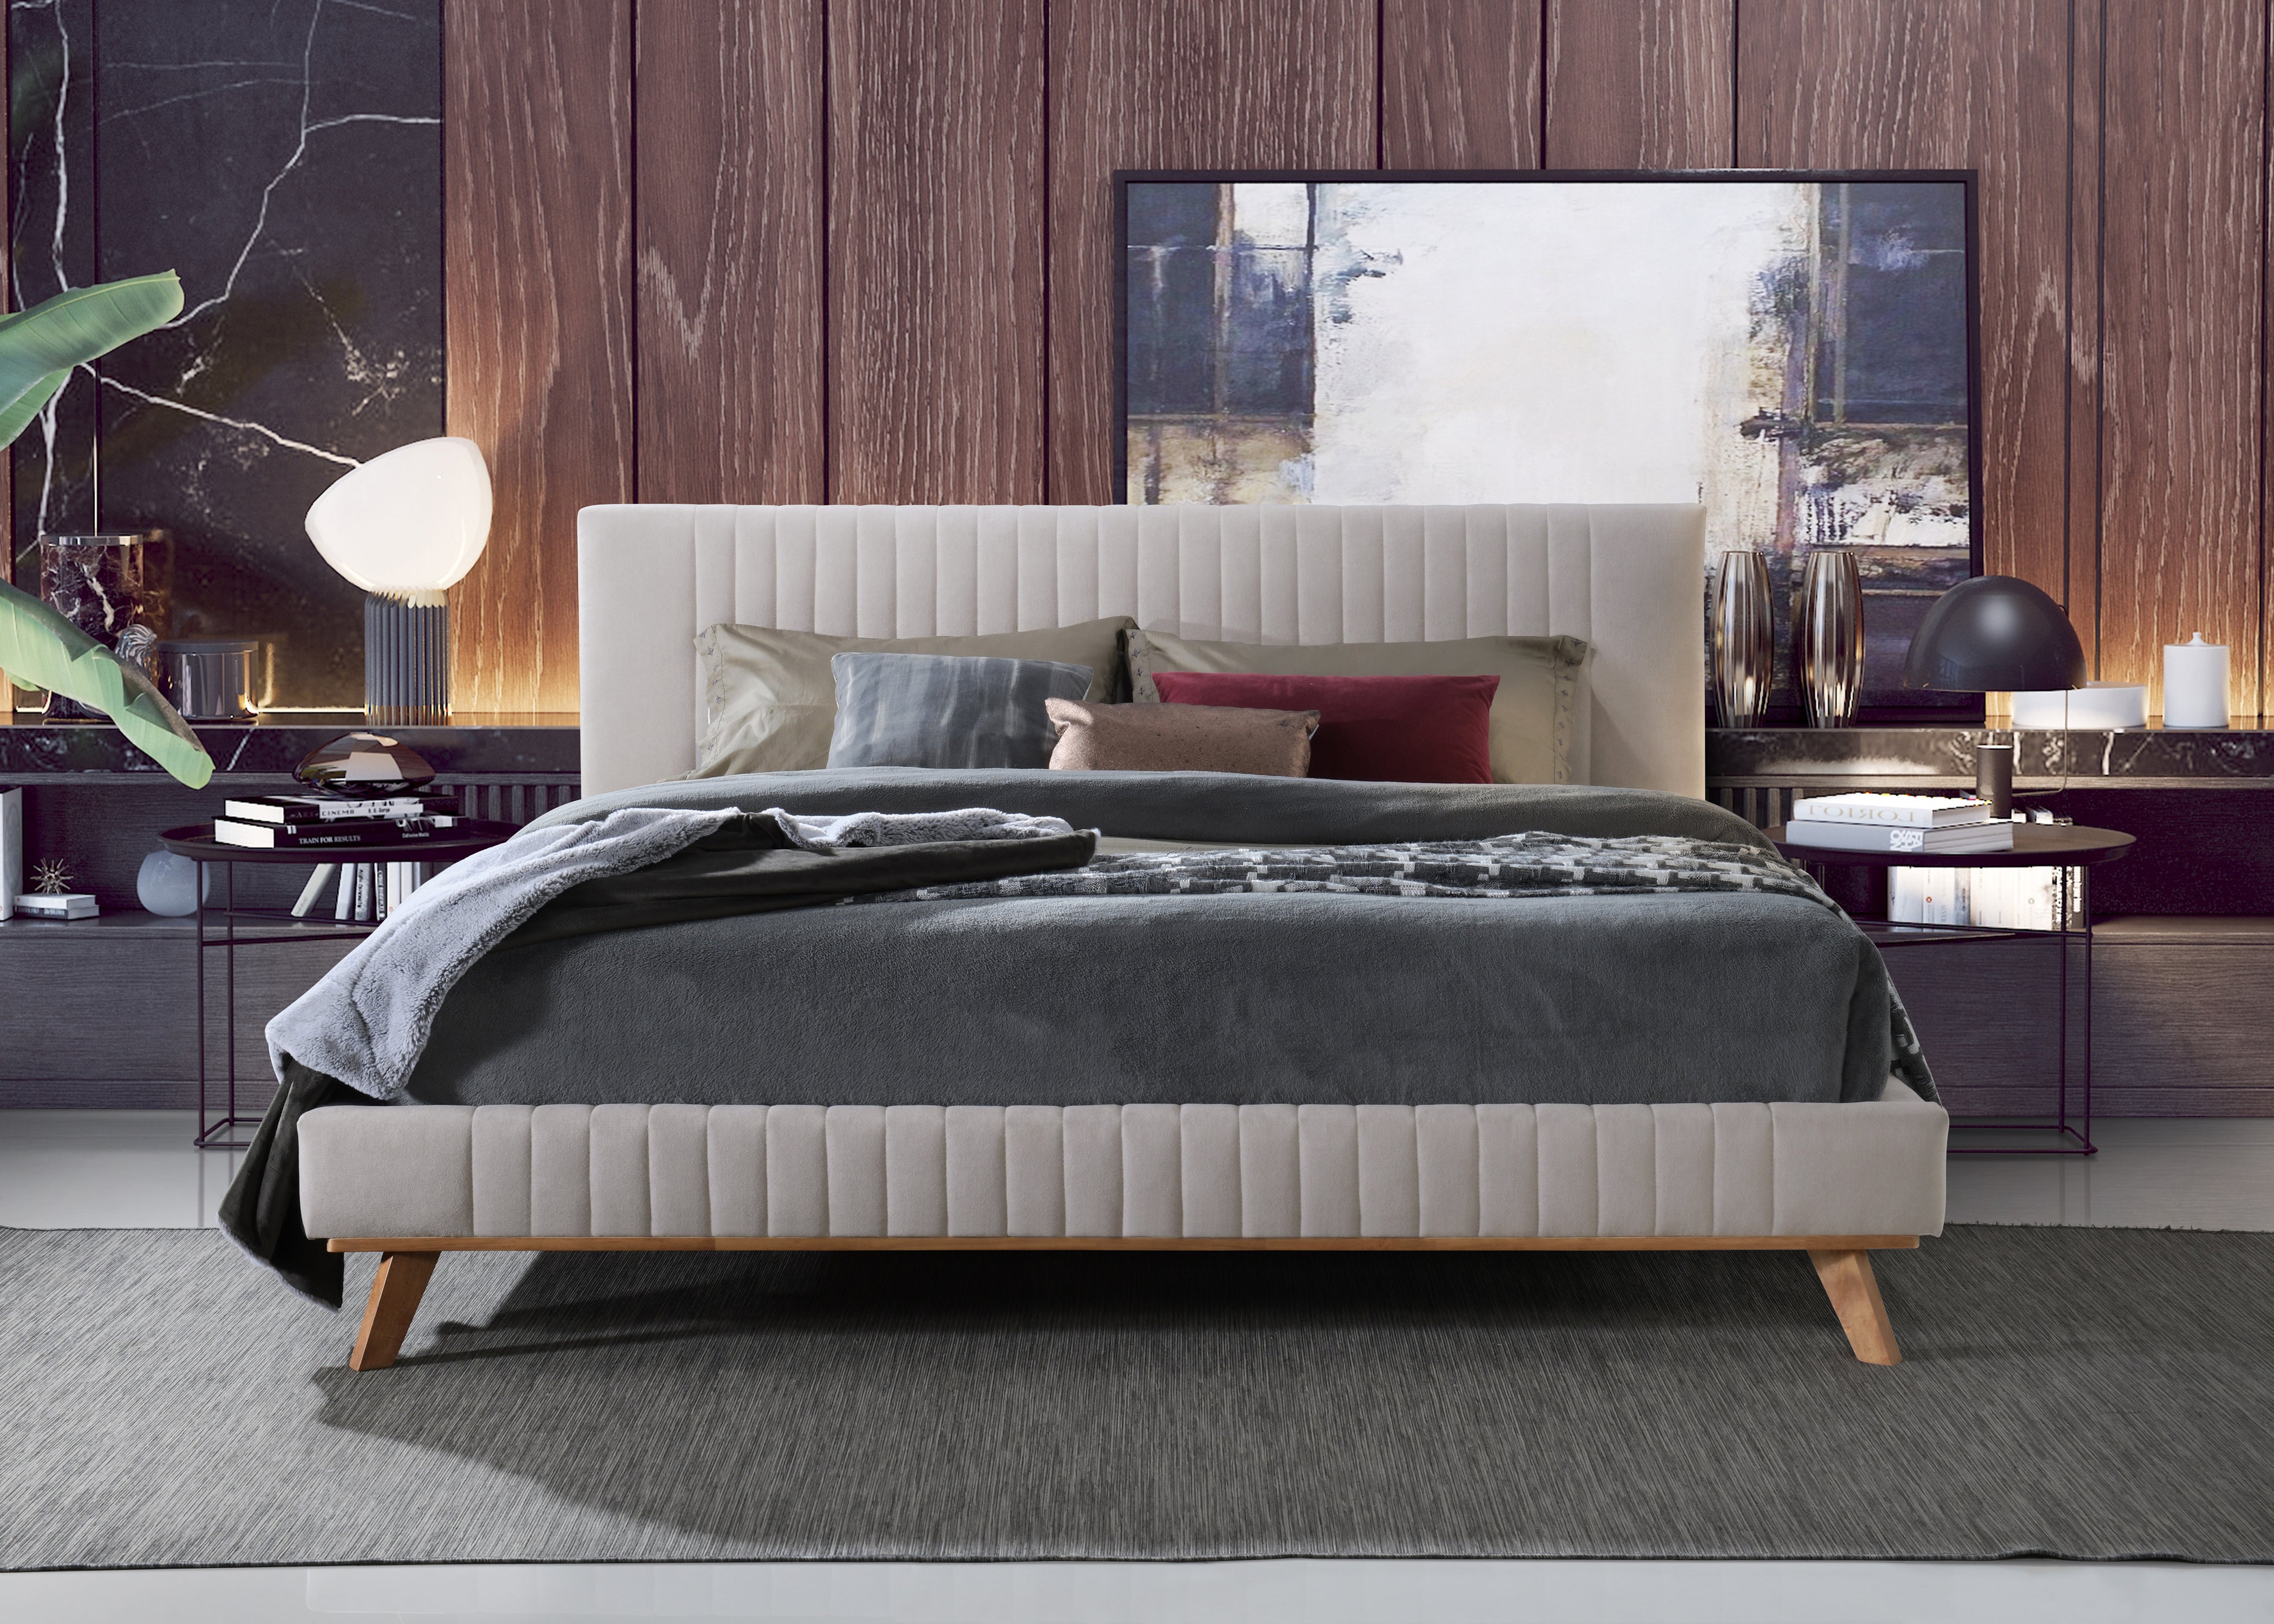 Sven Upholstered Platform Bed - King size, Taupe